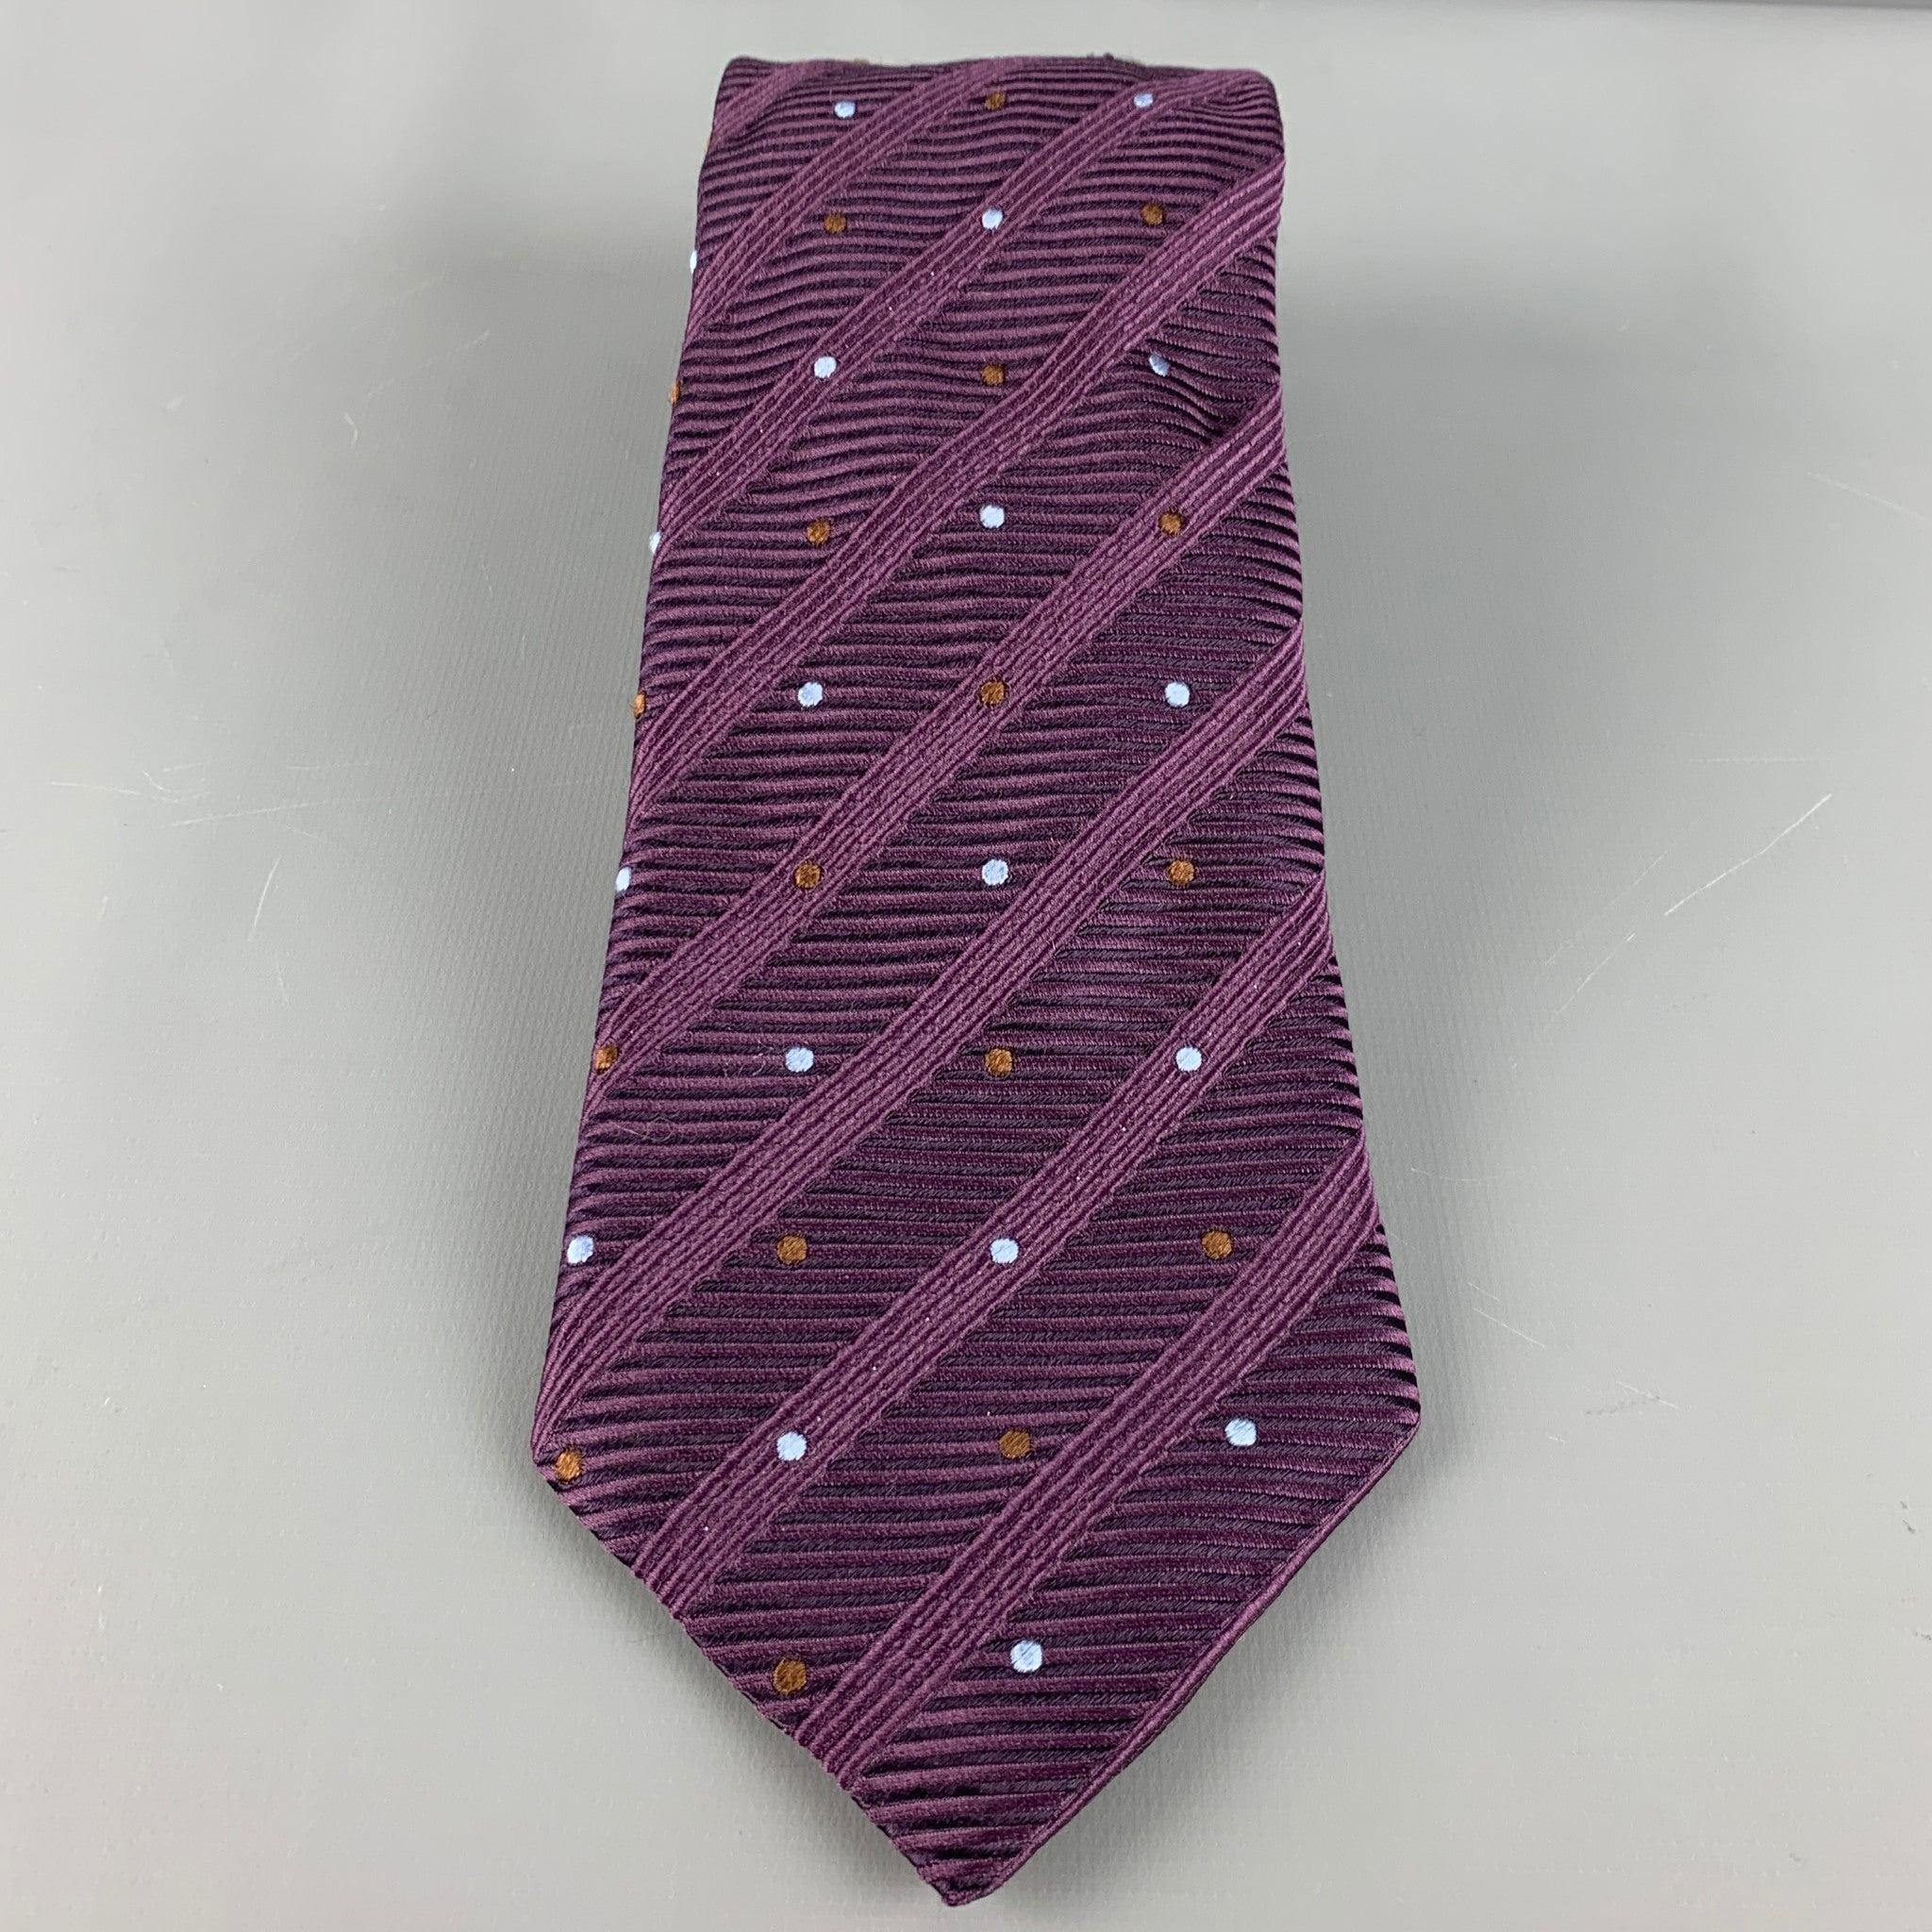 CANALI Krawatte aus 100% Seide, mit einem lila kontrastierenden Rippenmuster mit blauen und braunen Punkten. Made in Italy. sehr guter gebrauchter Zustand. 

Abmessungen: 
  Breite: 4 Zoll Länge: 60,5 Zoll 
  
  
 
Sui Generis-Referenz: